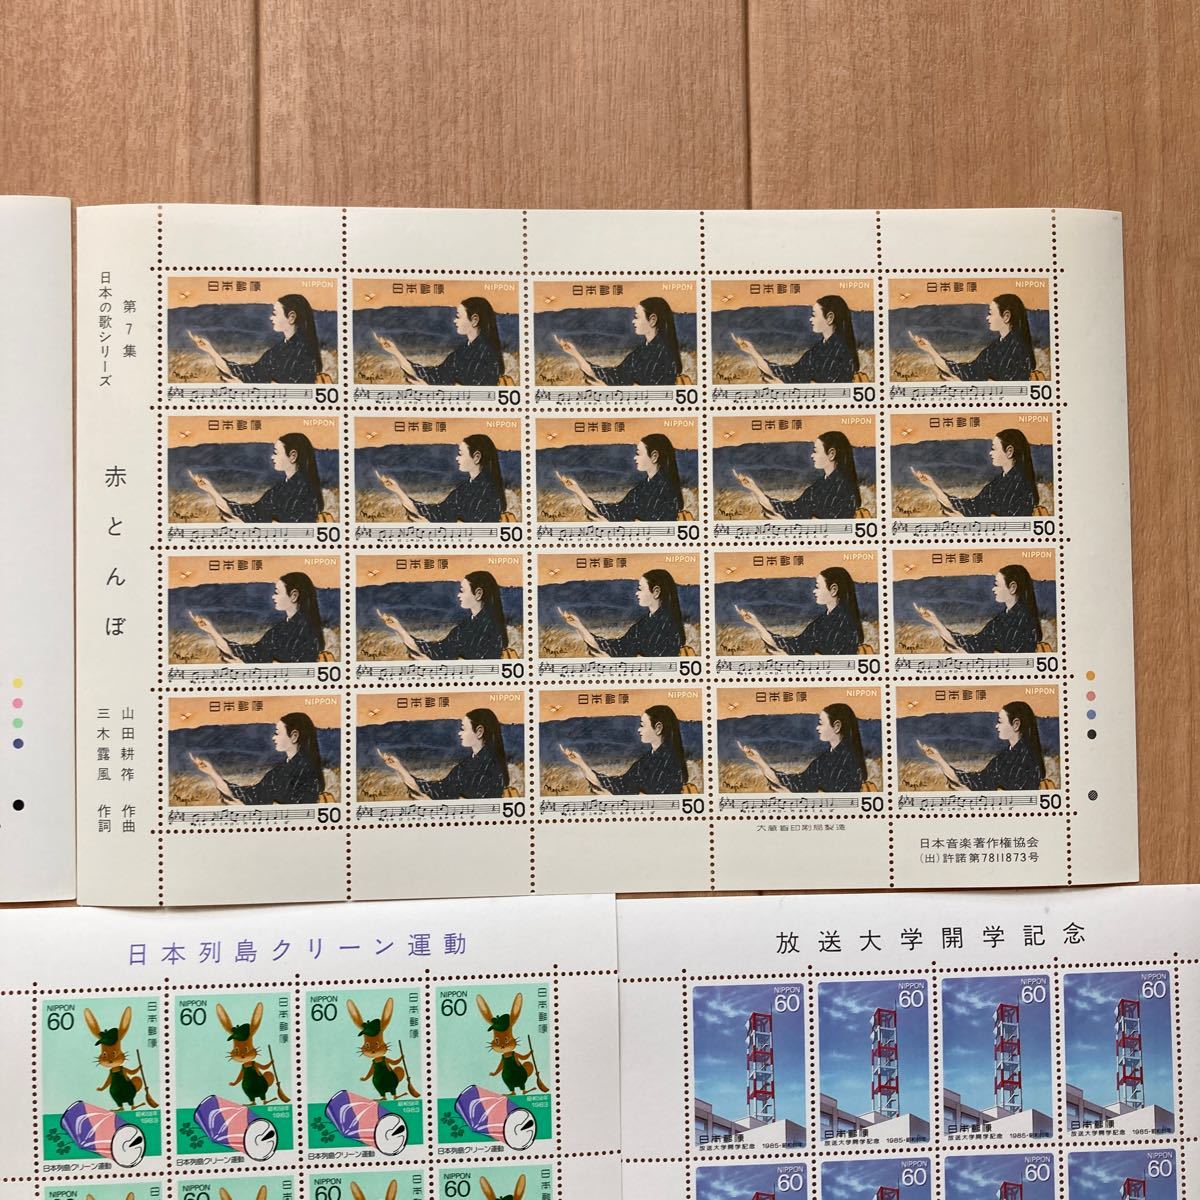 【再値下げ】記念切手(日本の歌シリーズほか)9300円